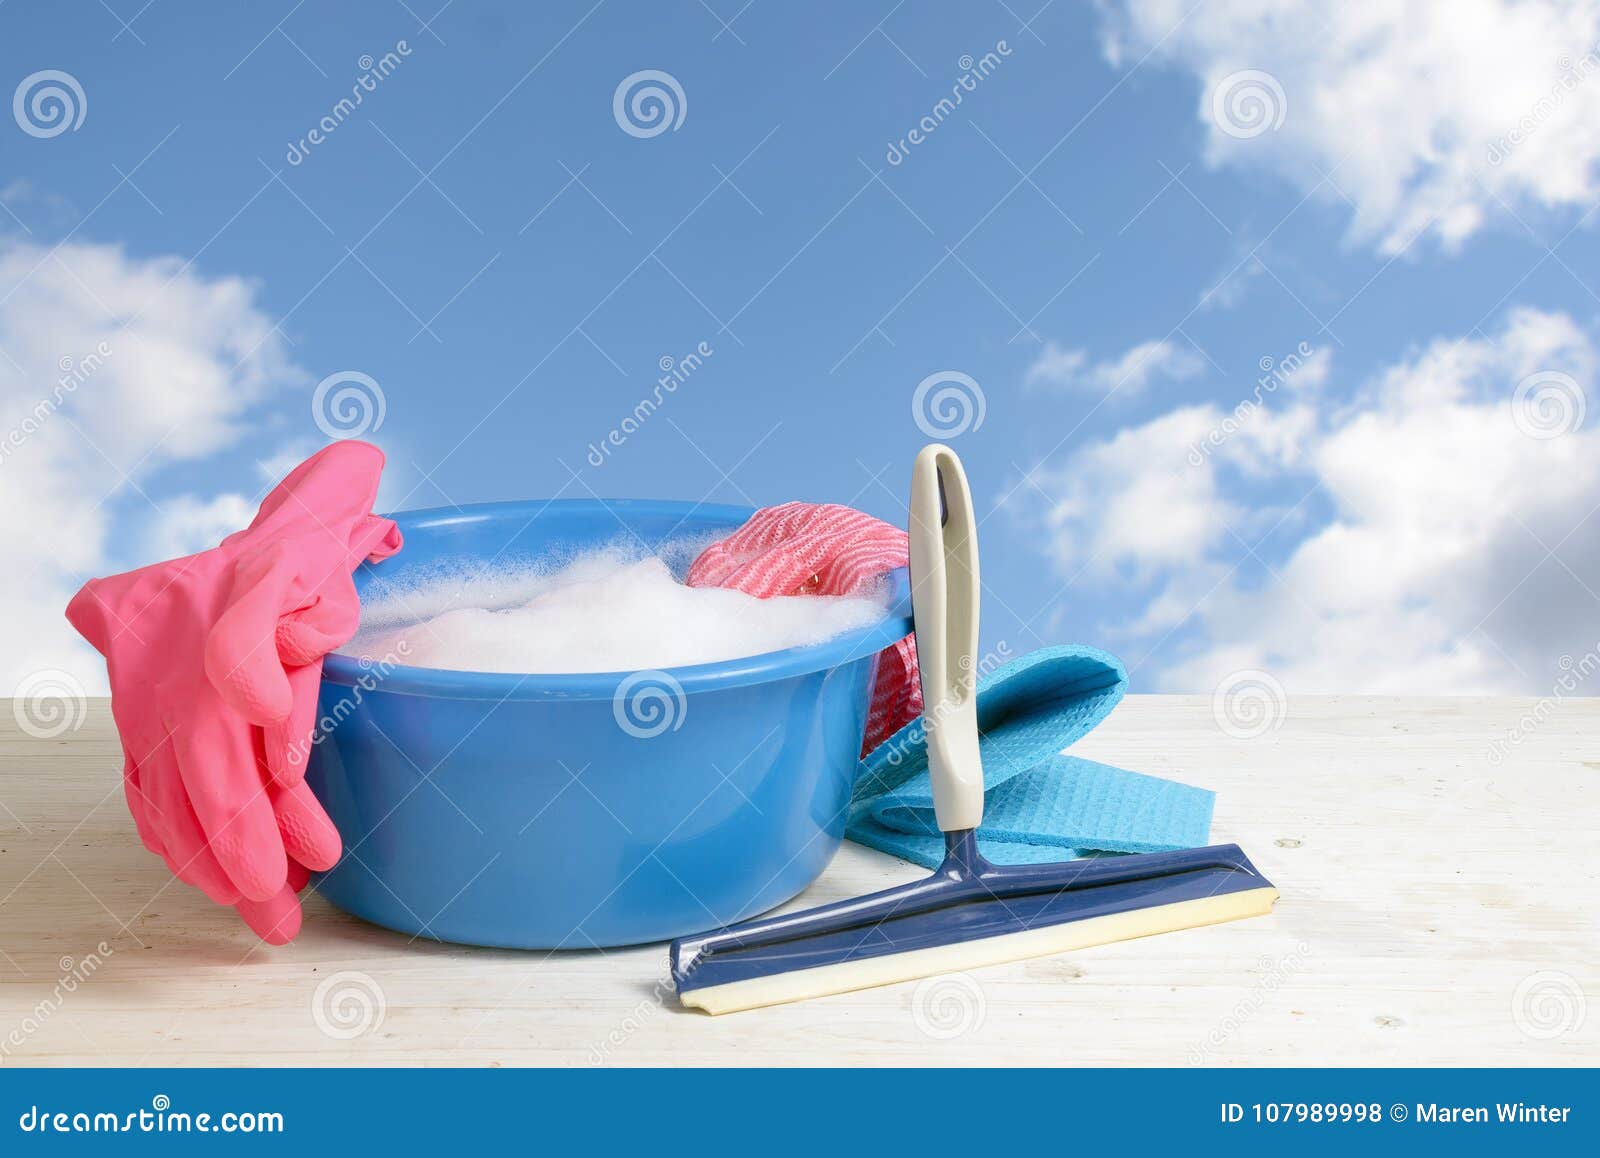 Spring Cleaning, Zacken Blaue Plastikschüssel Mit Seifenschaum, Gummi G Aus  Stockfoto - Bild von zuhause, seife: 107989998